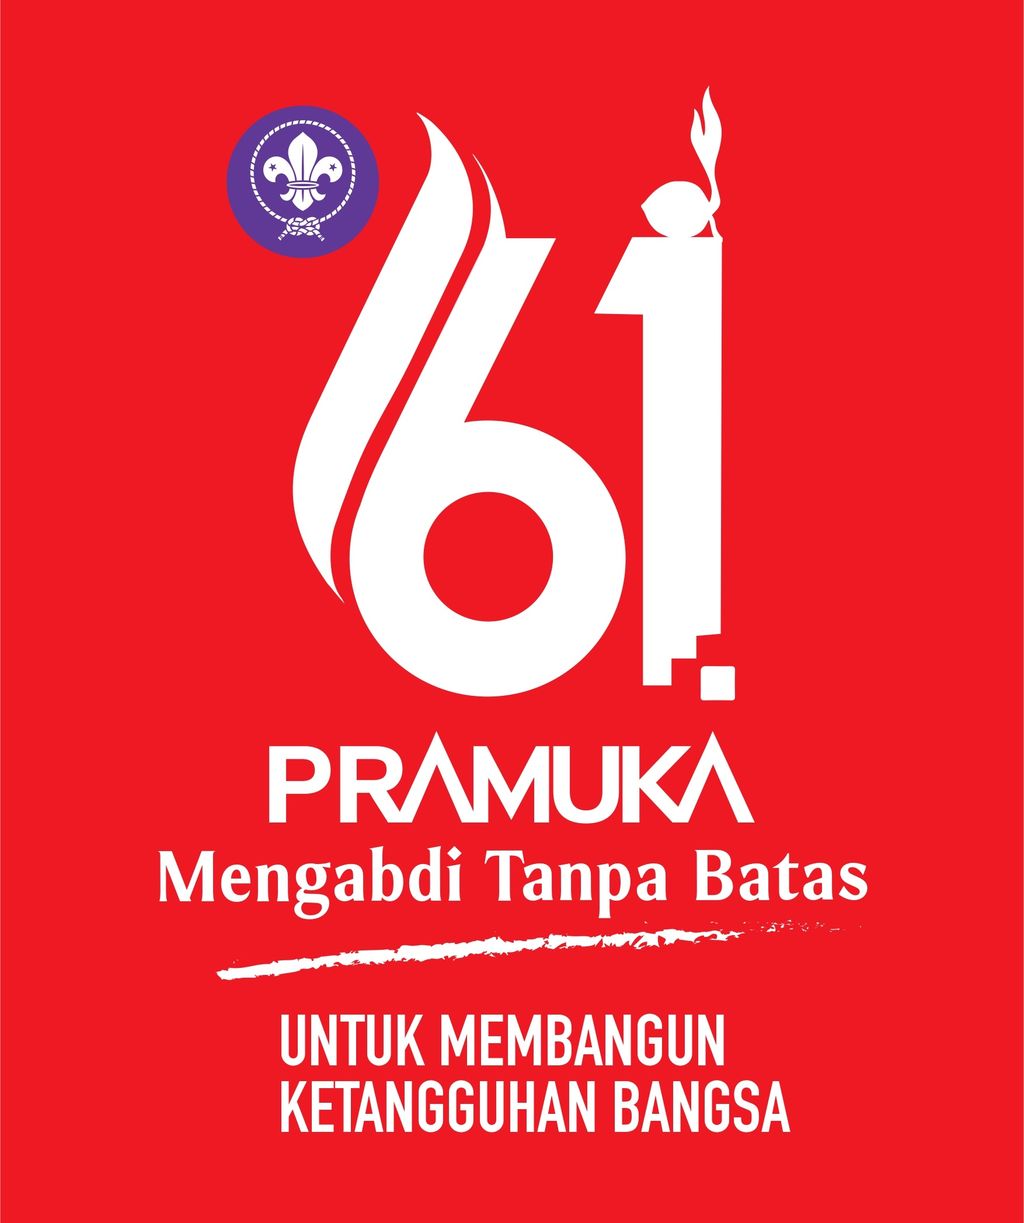 Logo Hari Pramuka 2022 adalah representasi dari peringatan Hari Pramuka ke 61. Seperti diketahui, Hari Pramuka diperingati setiap tahun pada tanggal 14 Agustus.